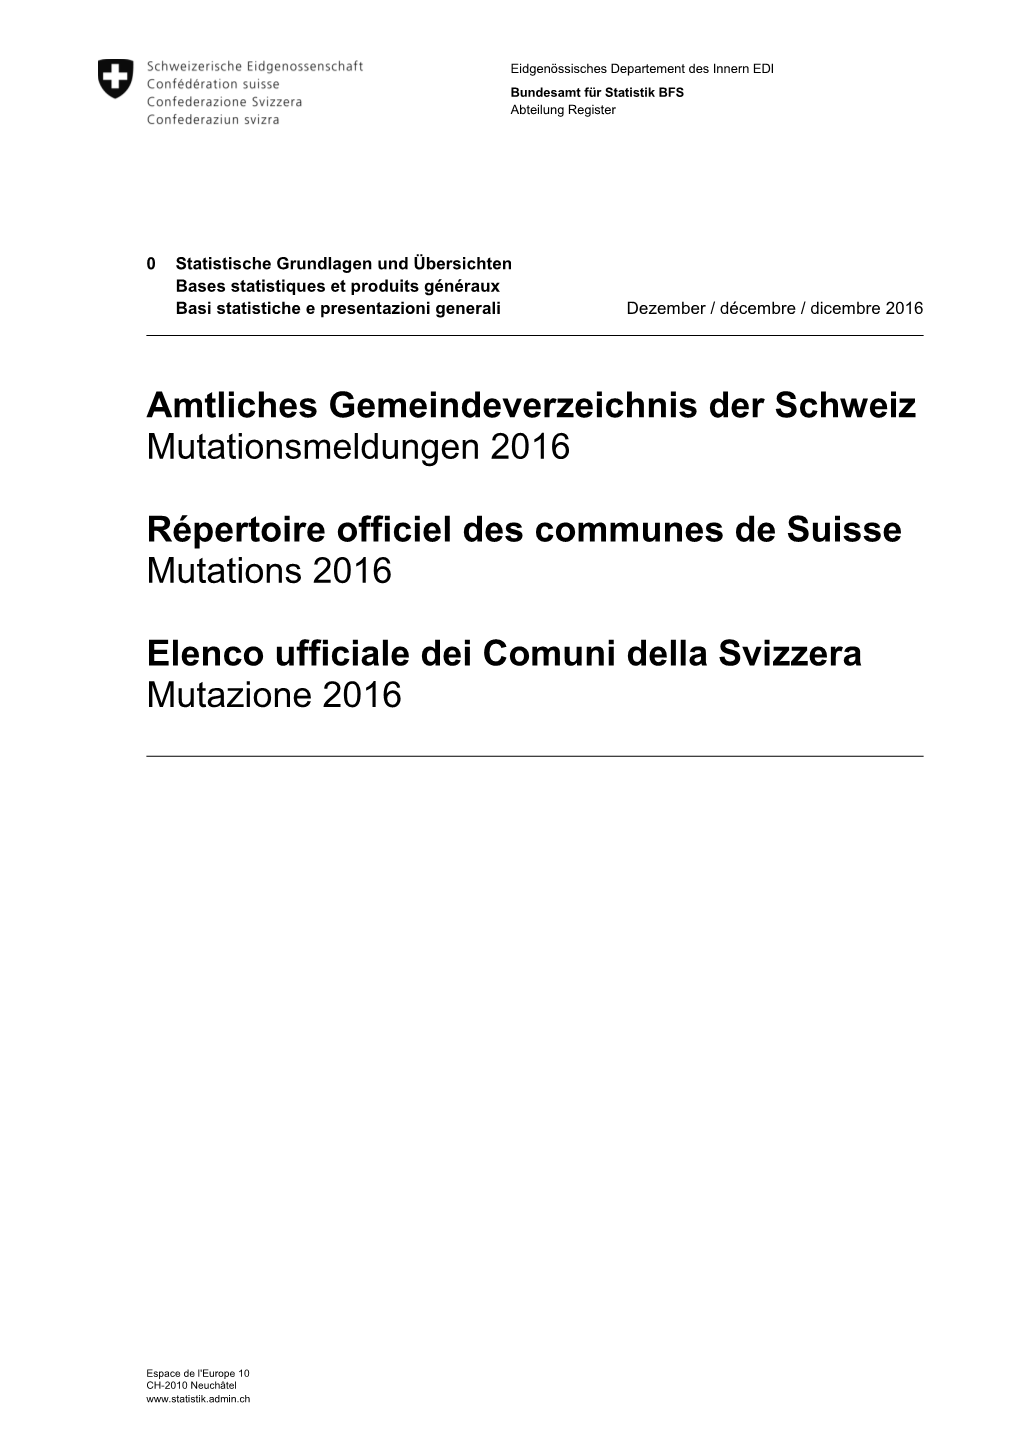 Amtliches Gemeindeverzeichnis Der Schweiz Mutationsmeldungen 2016